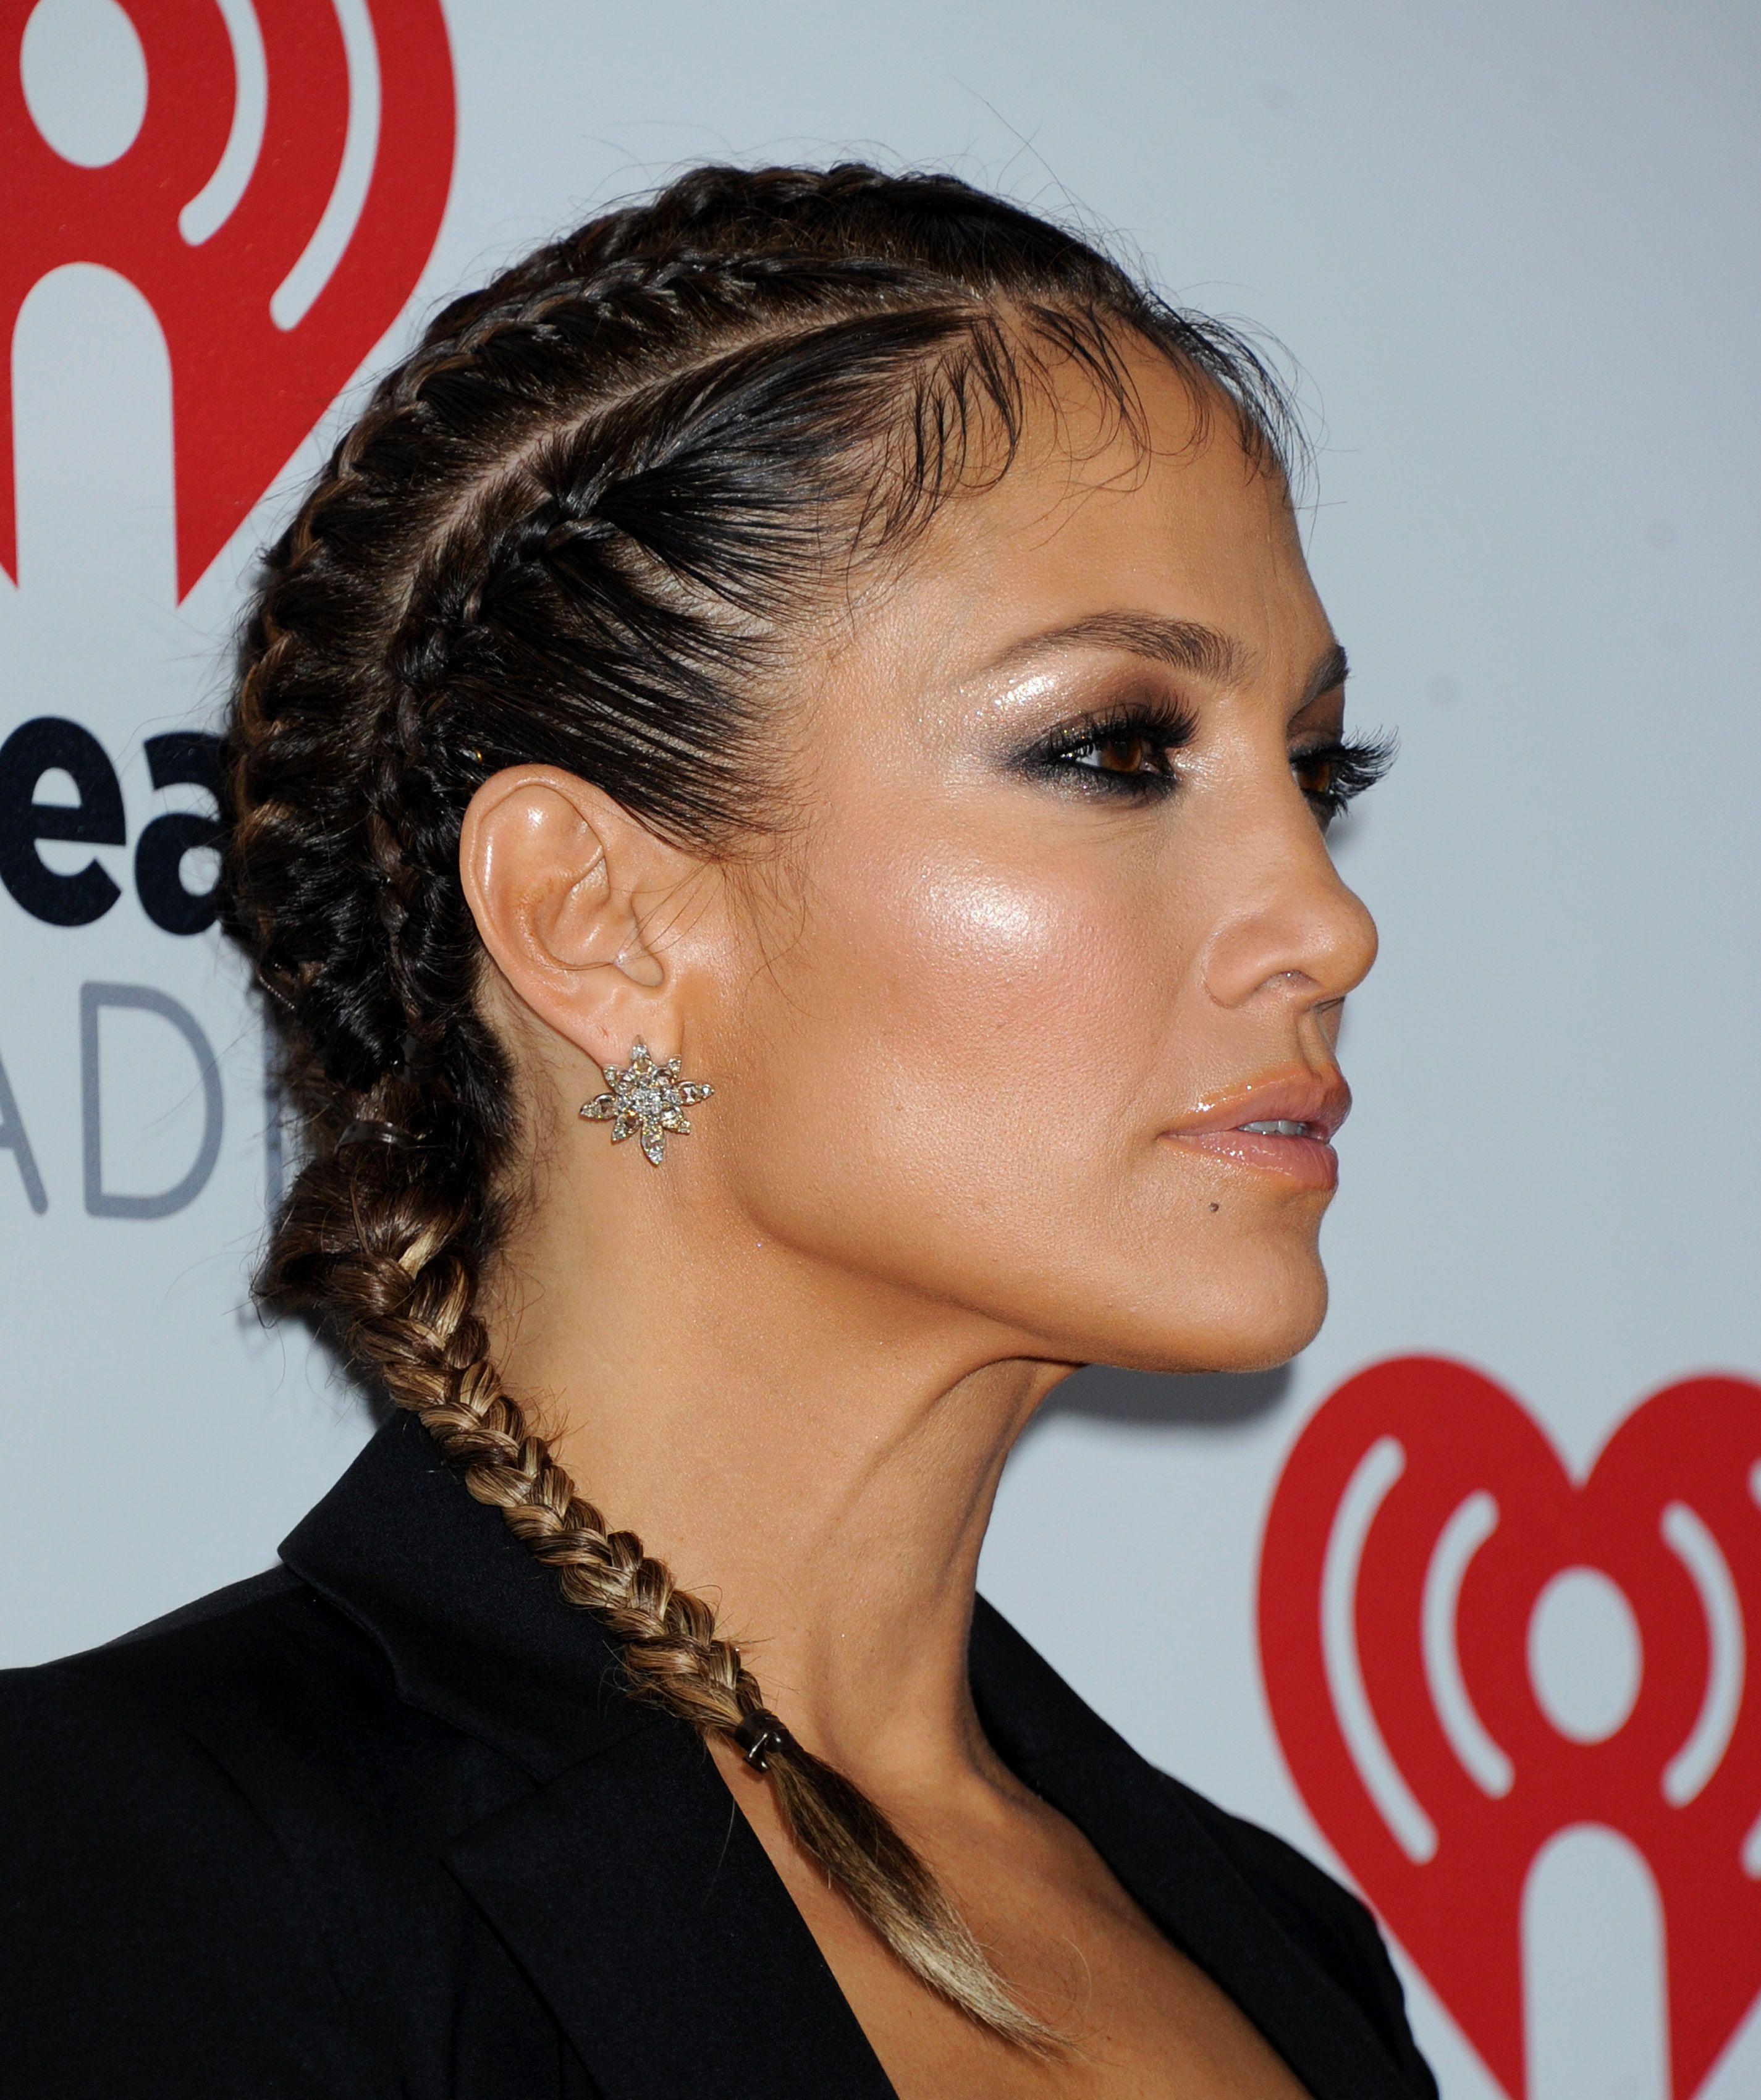 Jennifer Lopez iHeartRadio Music Festival in Las Vegas 19